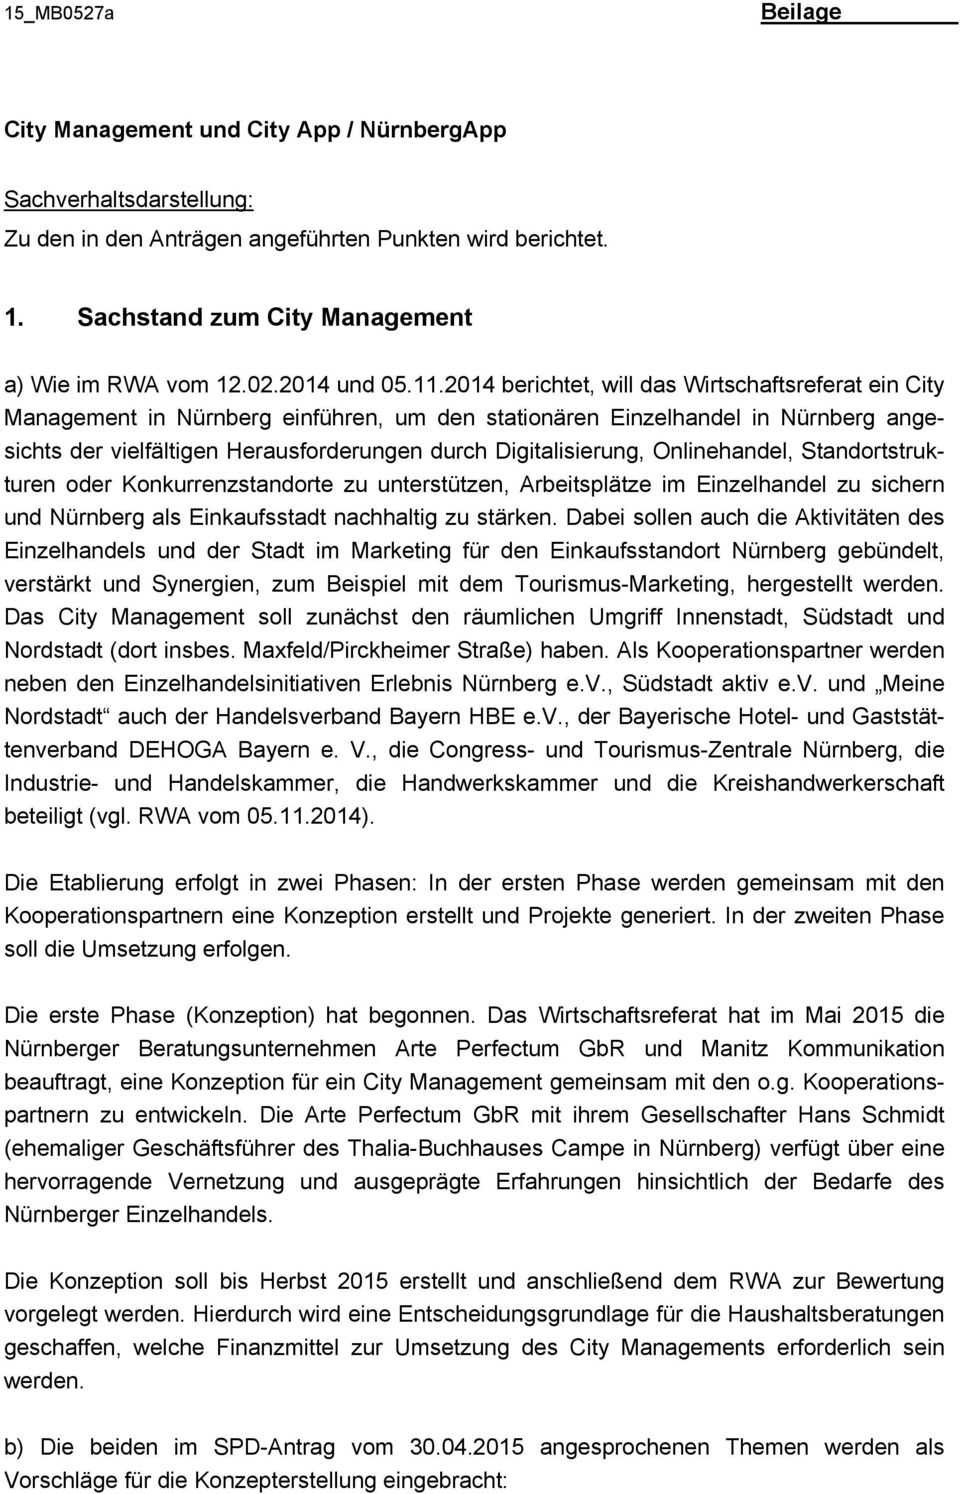 2014 berichtet, will das Wirtschaftsreferat ein City Management in Nürnberg einführen, um den stationären Einzelhandel in Nürnberg angesichts der vielfältigen Herausforderungen durch Digitalisierung,